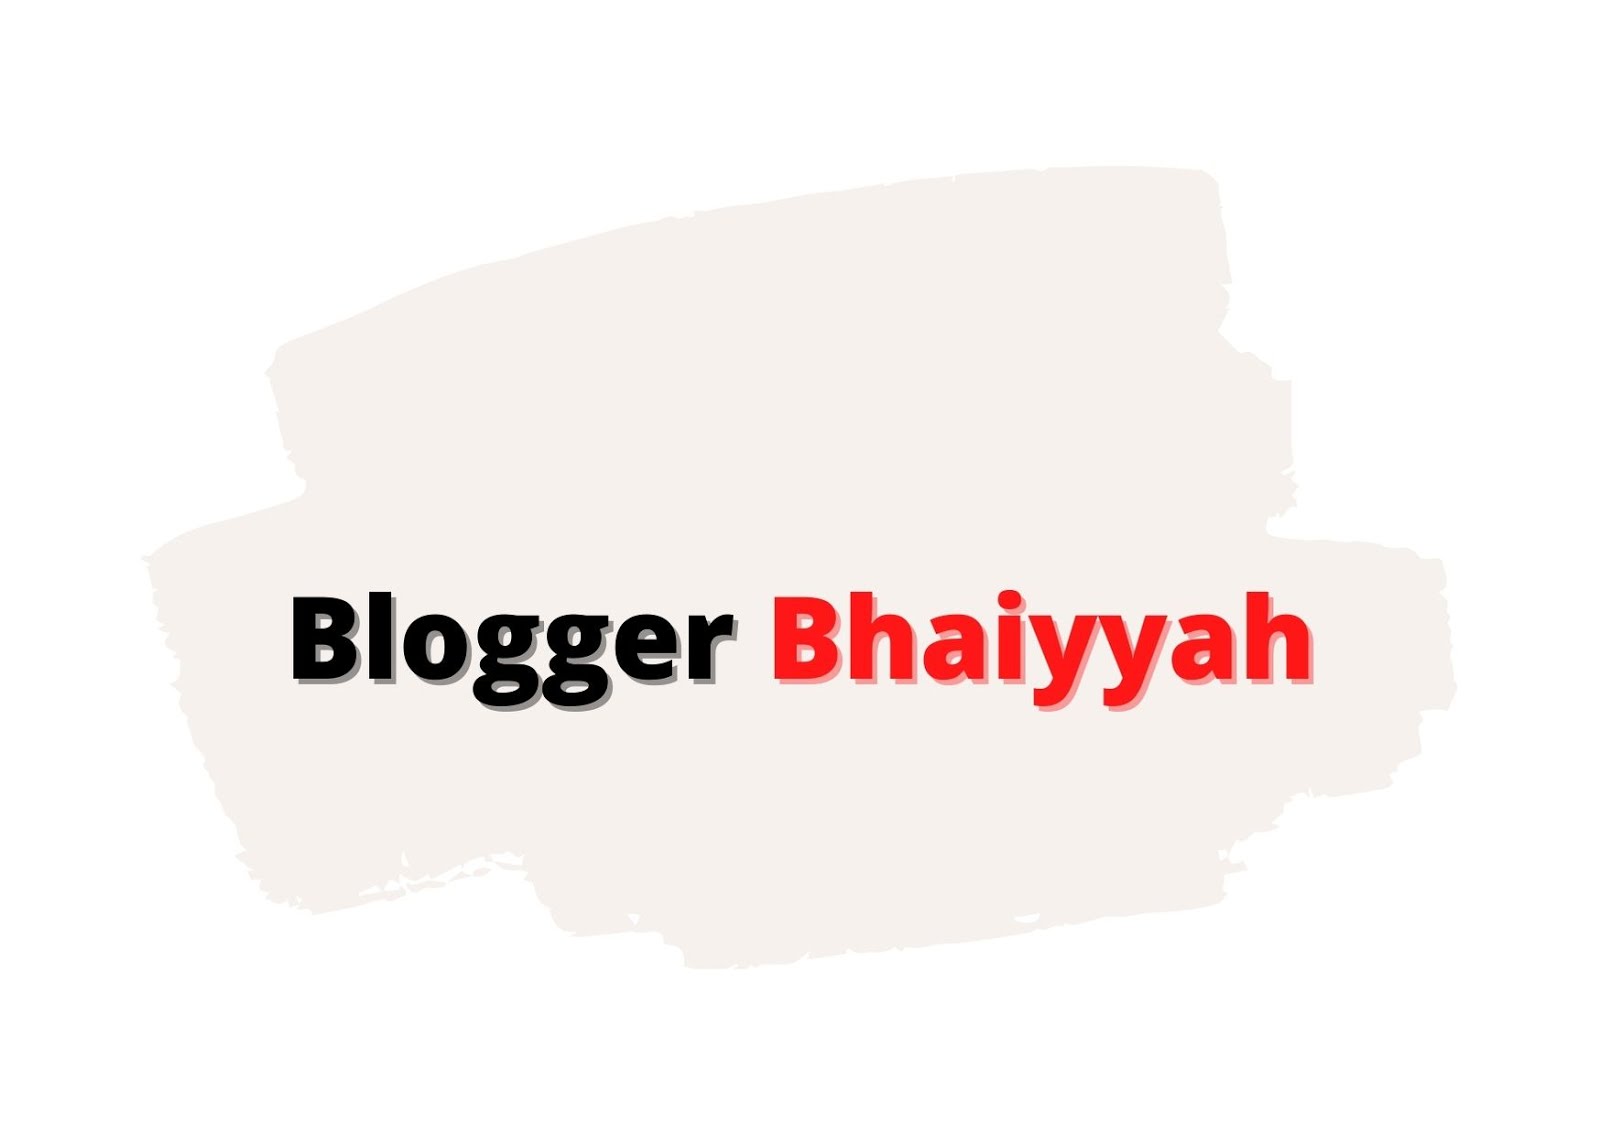 Blogger bhaiyyah